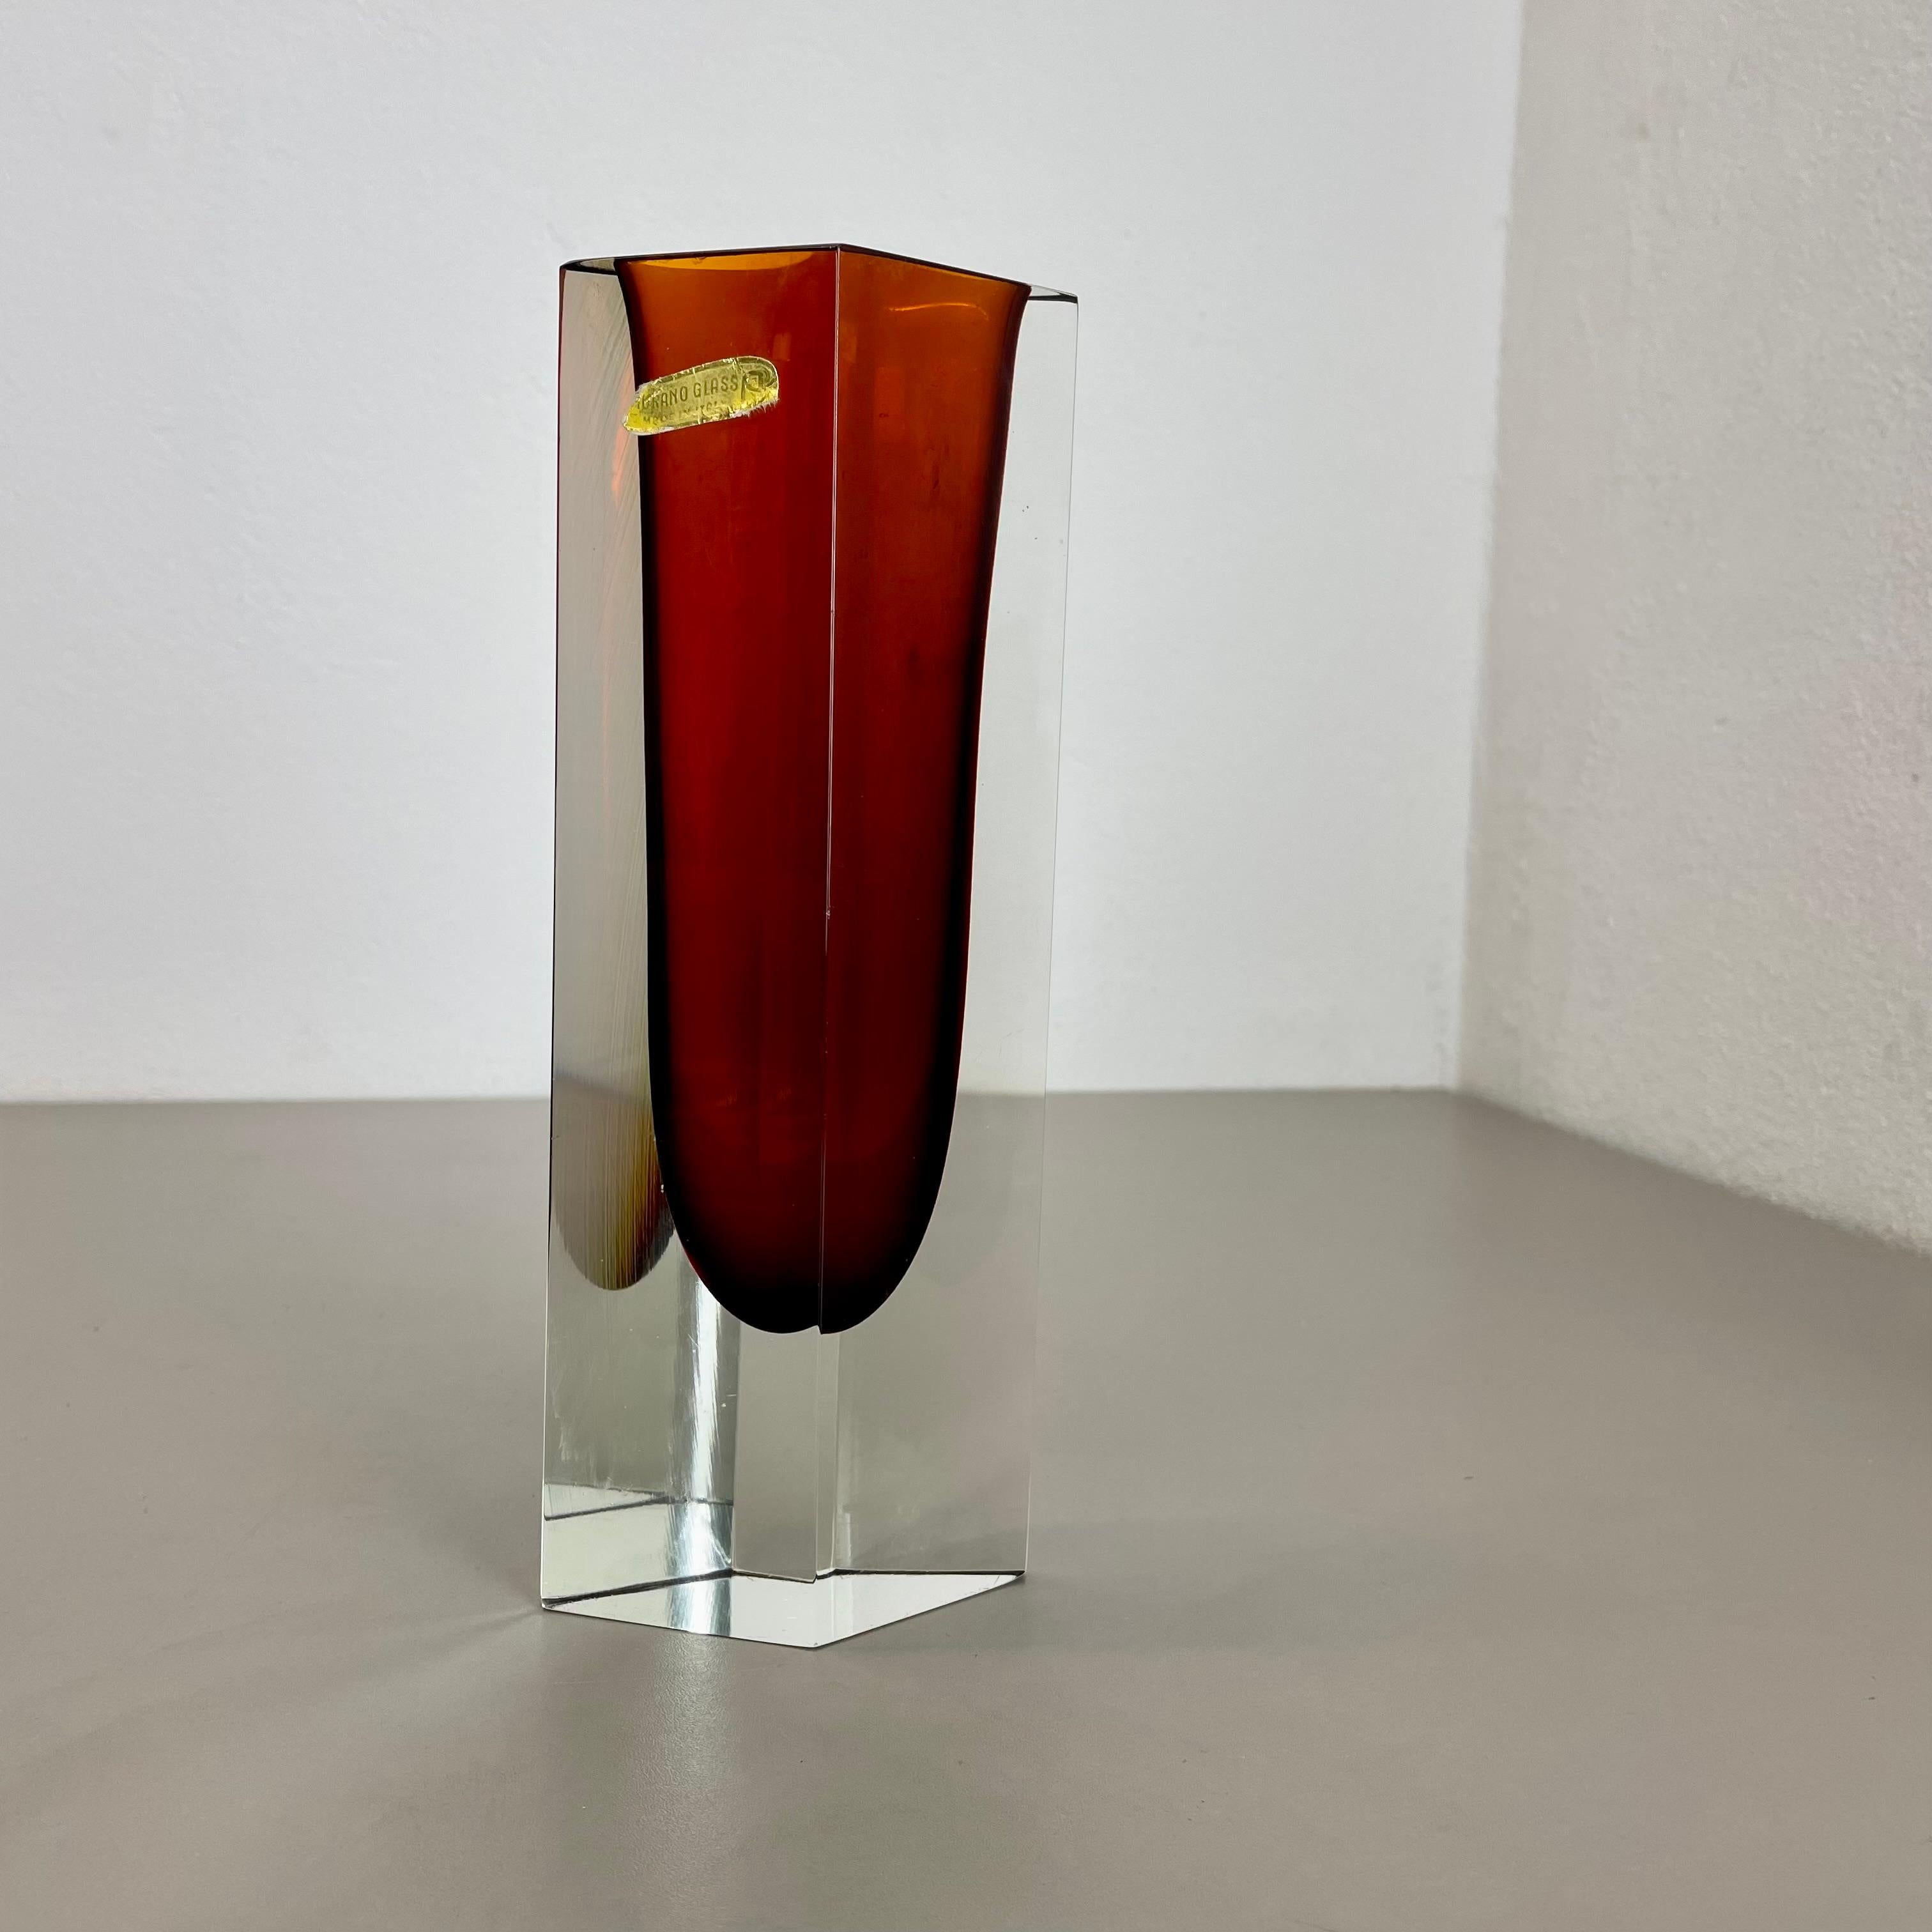 Article :

Vase en verre de Murano


Origine :

Murano, Italie


Design :

Flavio Poli a attribué.


Décennie :

1970s



Ce vase original en verre vintage a été conçu par Flavio Poli attribué et produit dans les années 1970 à Murano, en Italie.